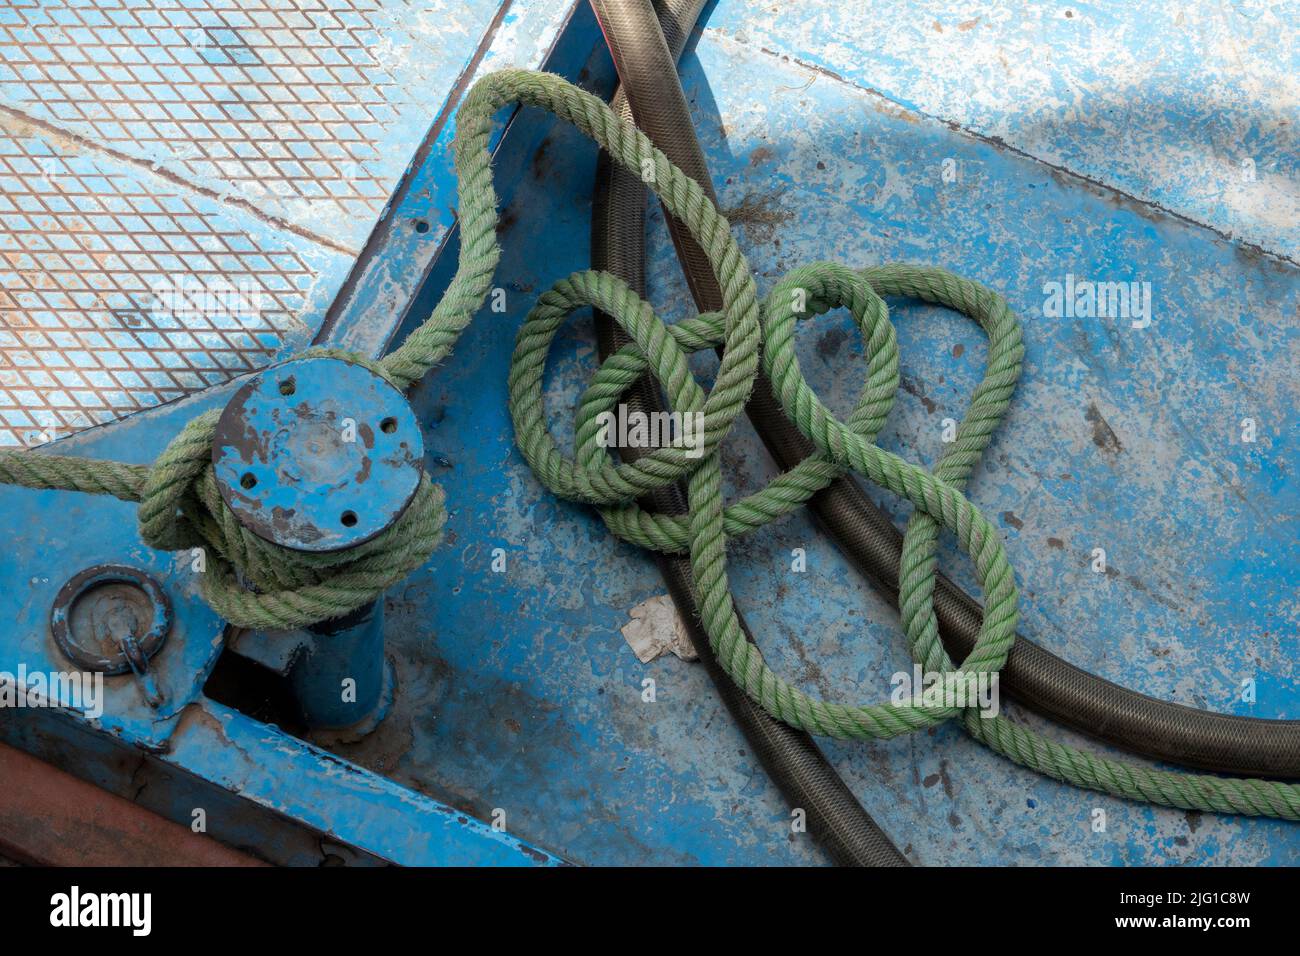 Eine kurze Länge von blassgrünem Festmacherseil, gebunden an einen kleinen Poller auf dem Deck eines blassblau lackierten Schiffes Stockfoto